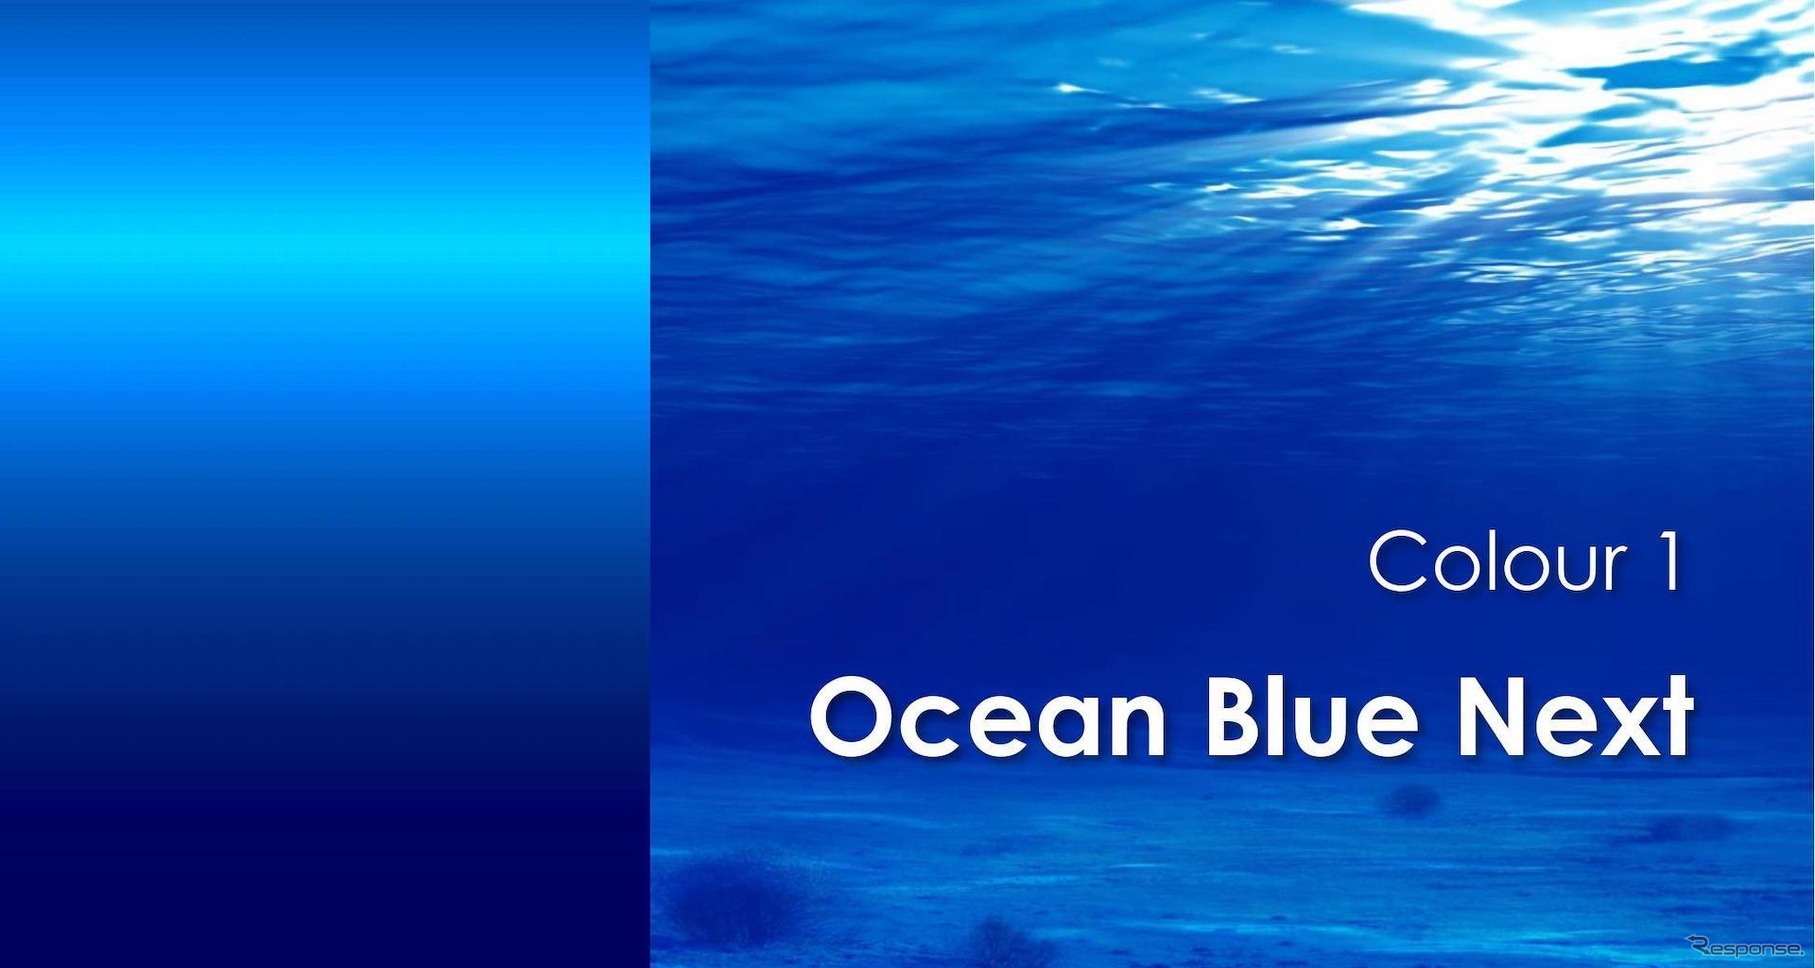 Ocean Blue Next